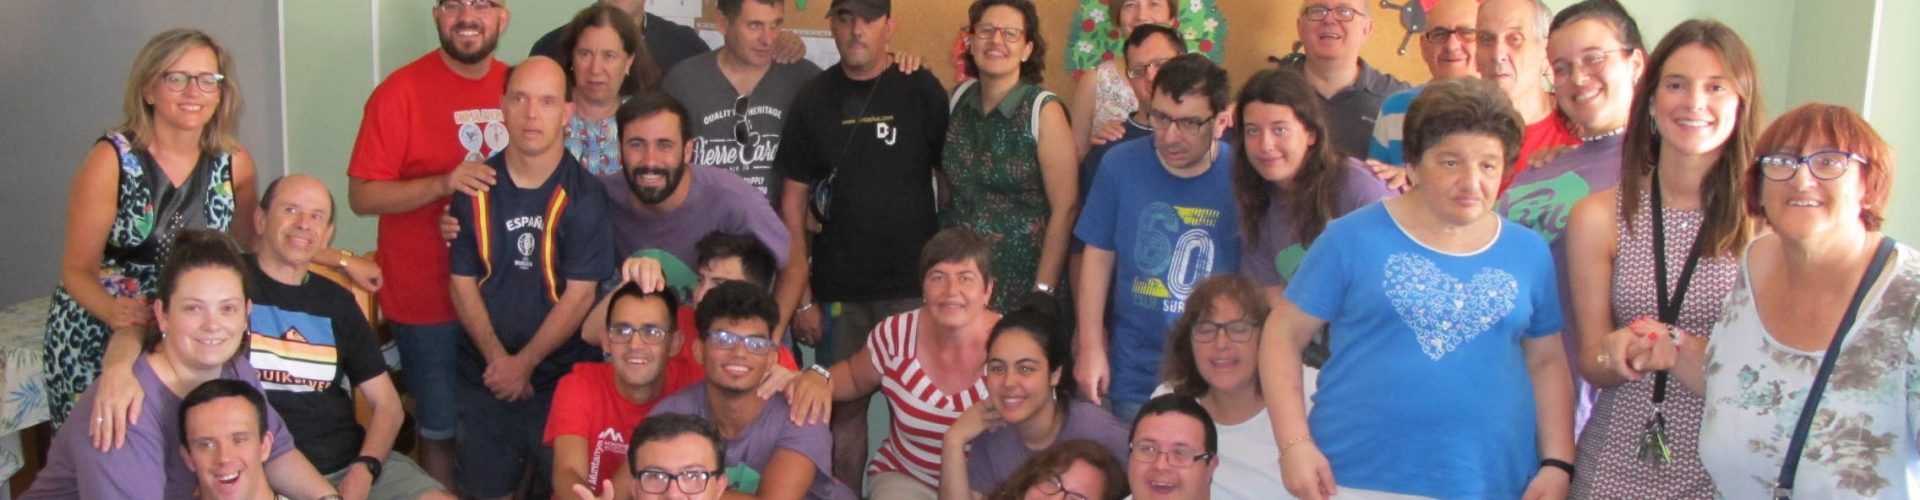 Benicarló vol importar el model dels camps de voluntariat a la joventut local